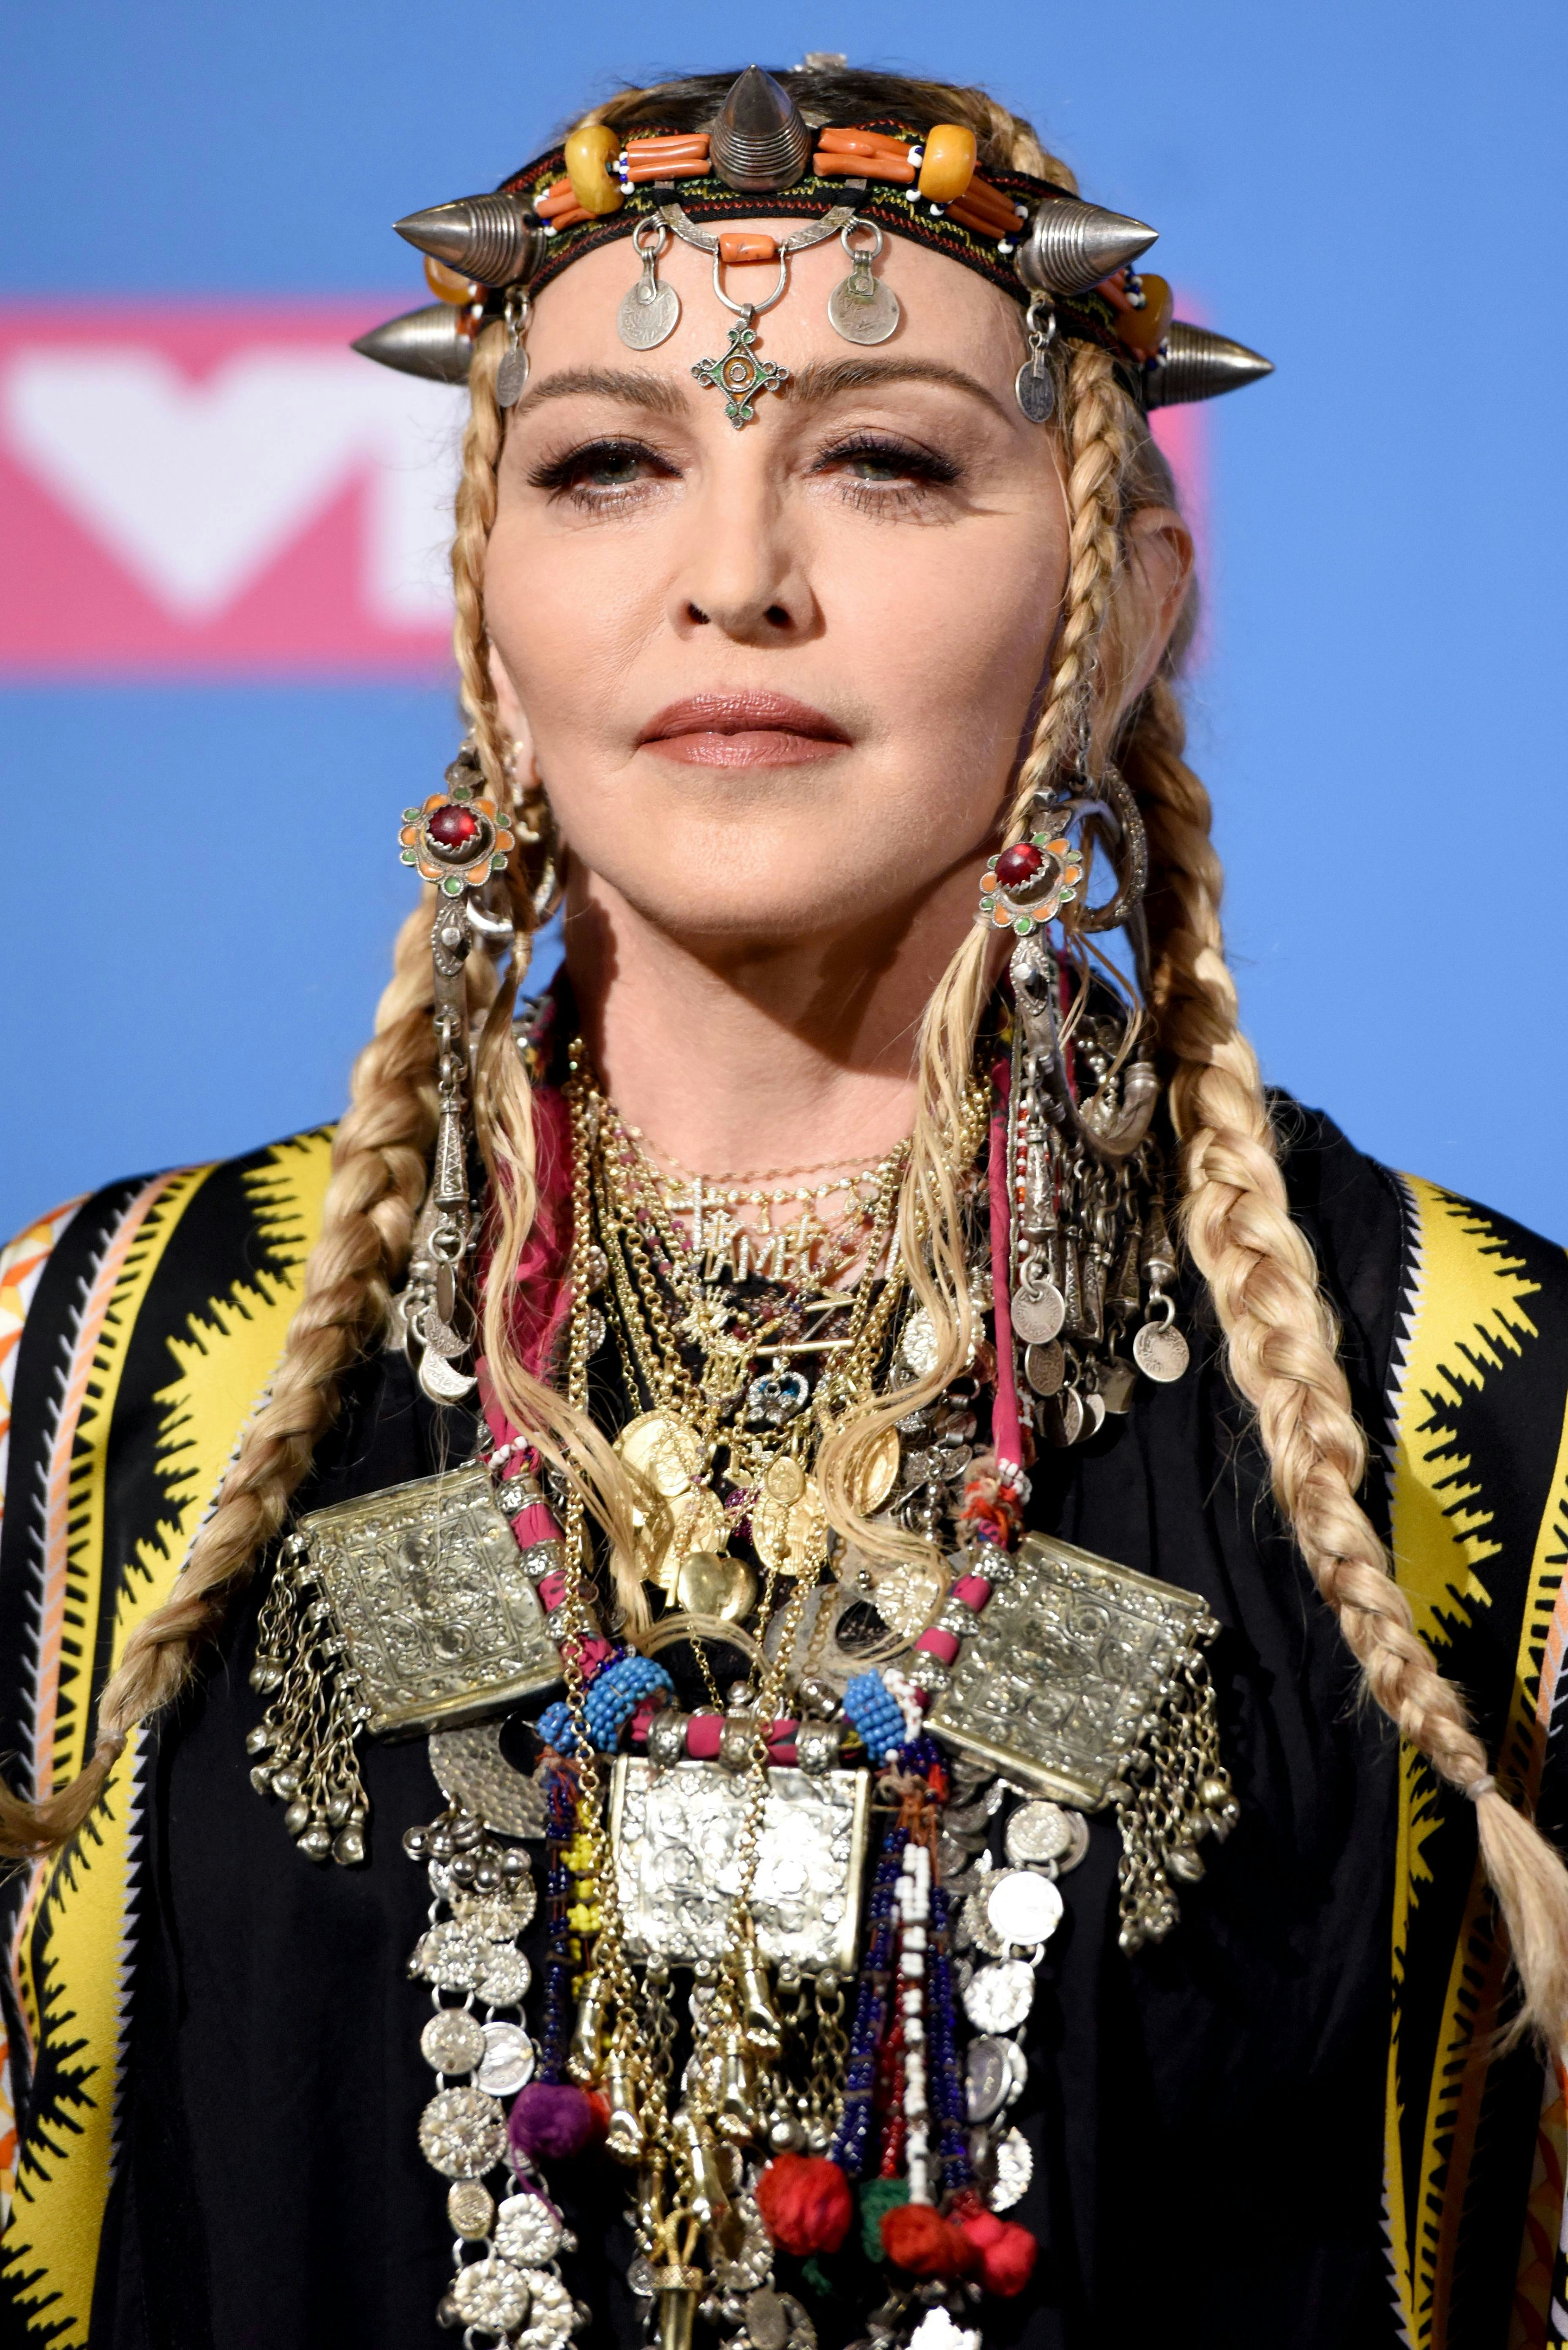 Sangerinden Madonna dyrker stadig eksperimenterende stil 